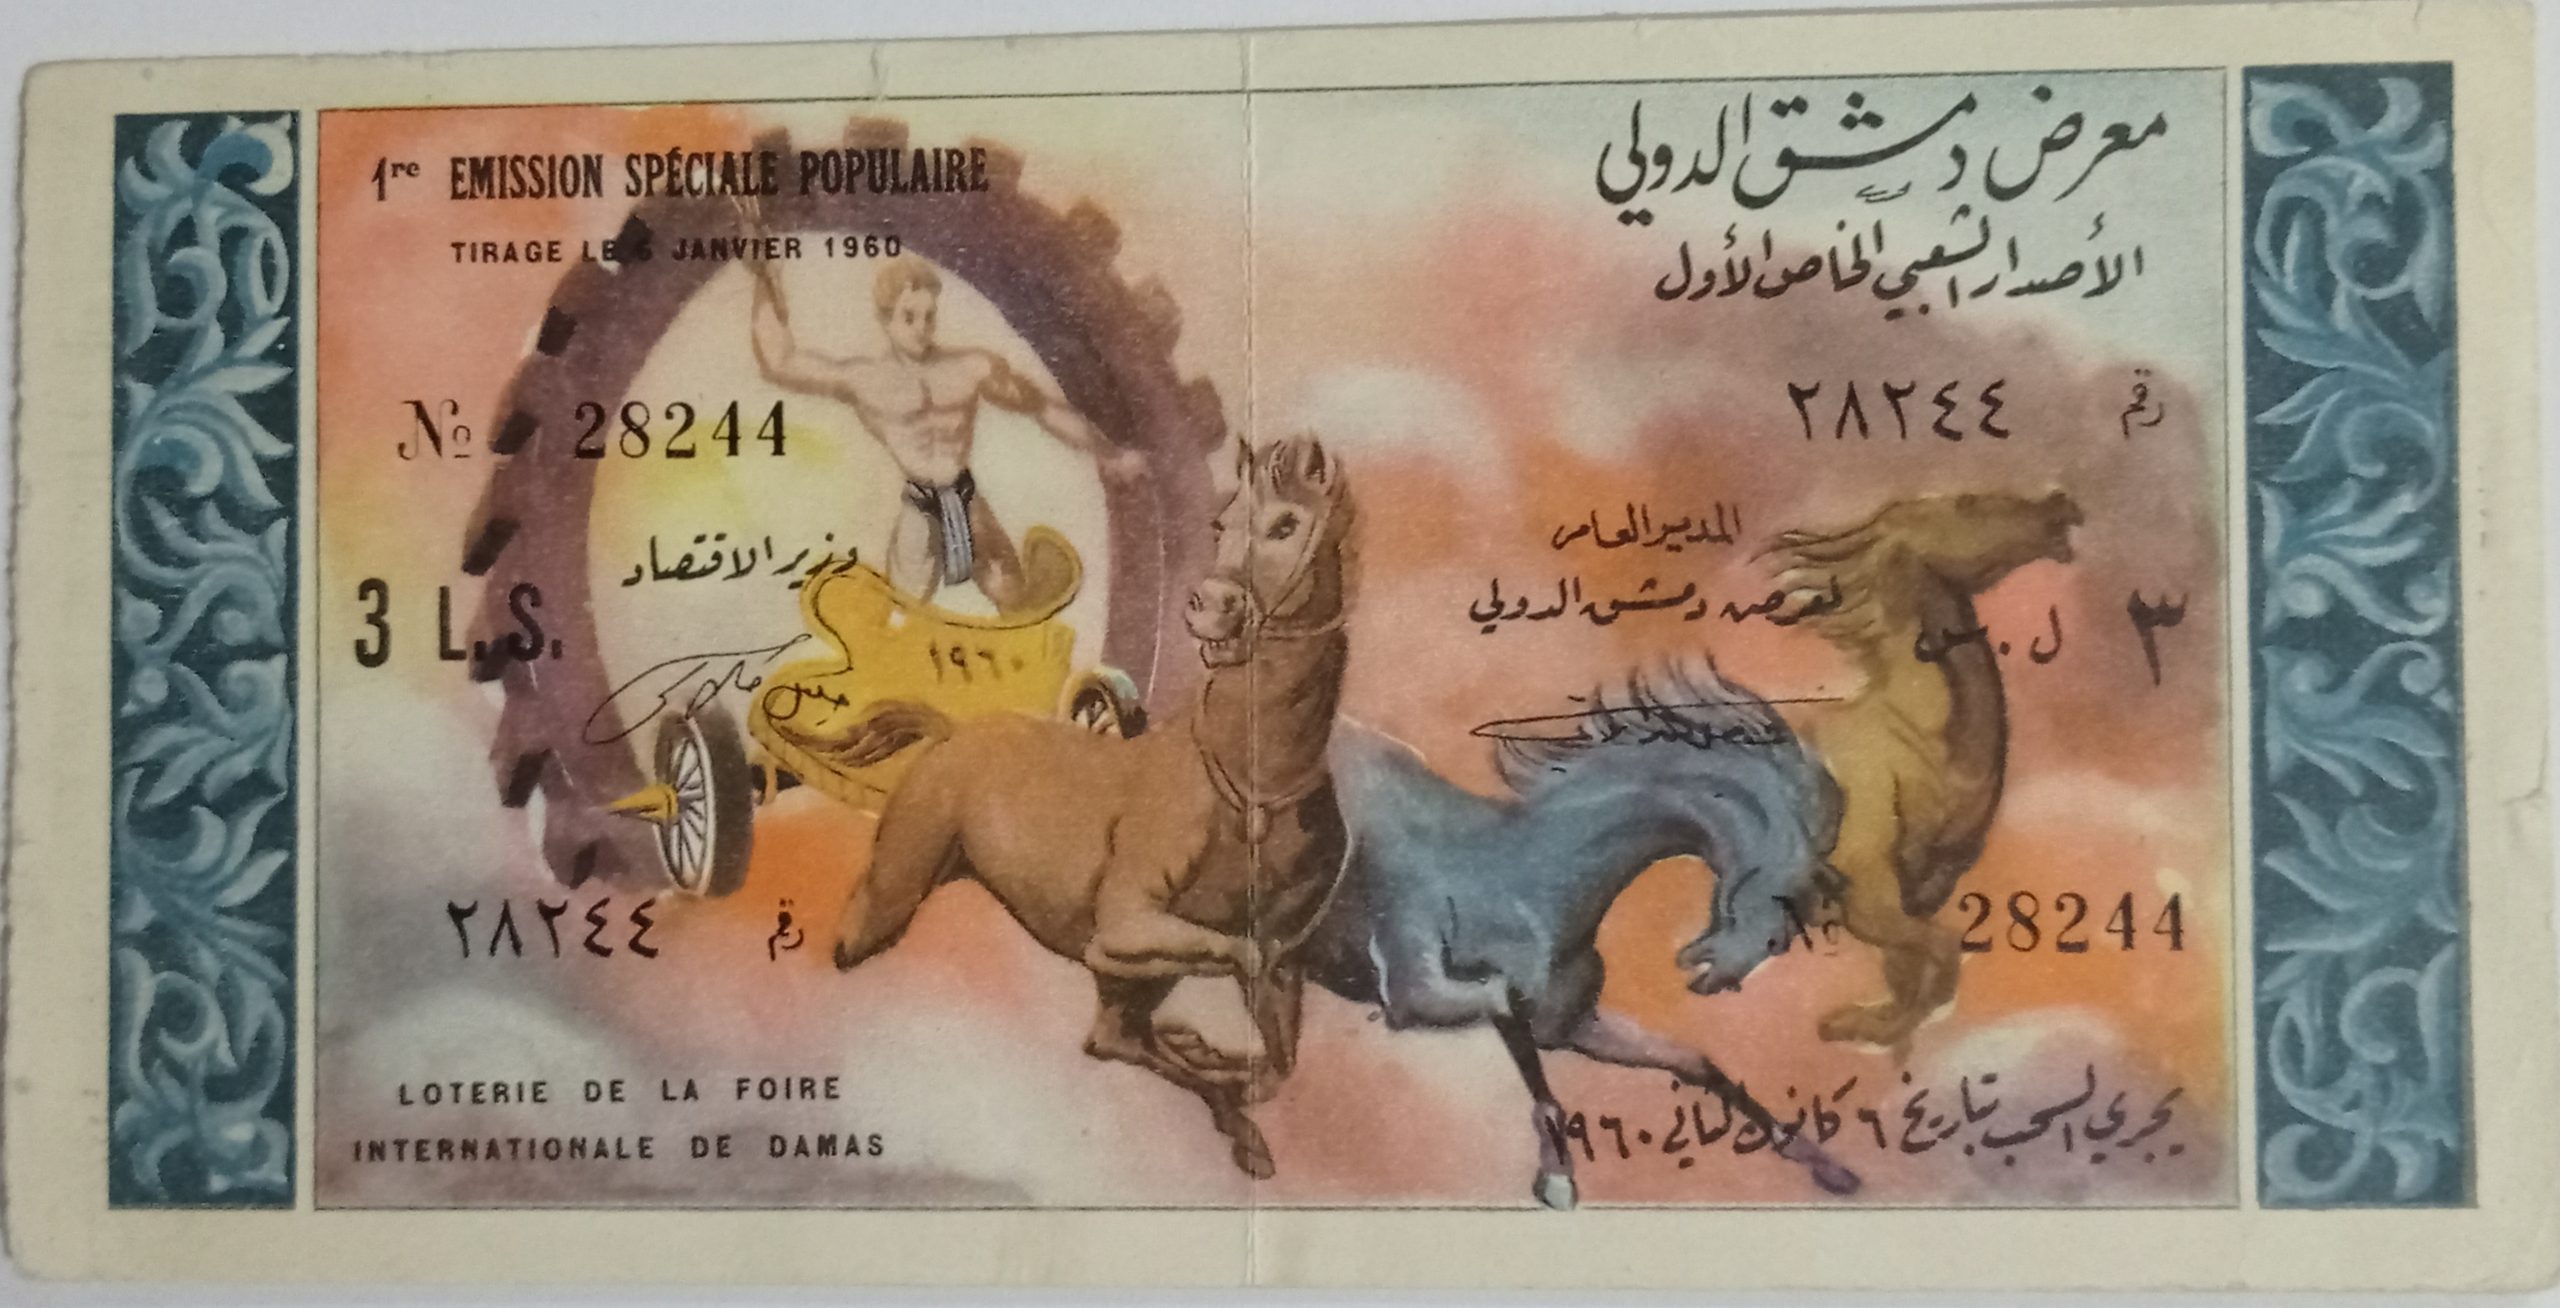 التاريخ السوري المعاصر - يانصيب معرض دمشق الدولي - الاصدار الشعبي الخاص الأول عام 1960